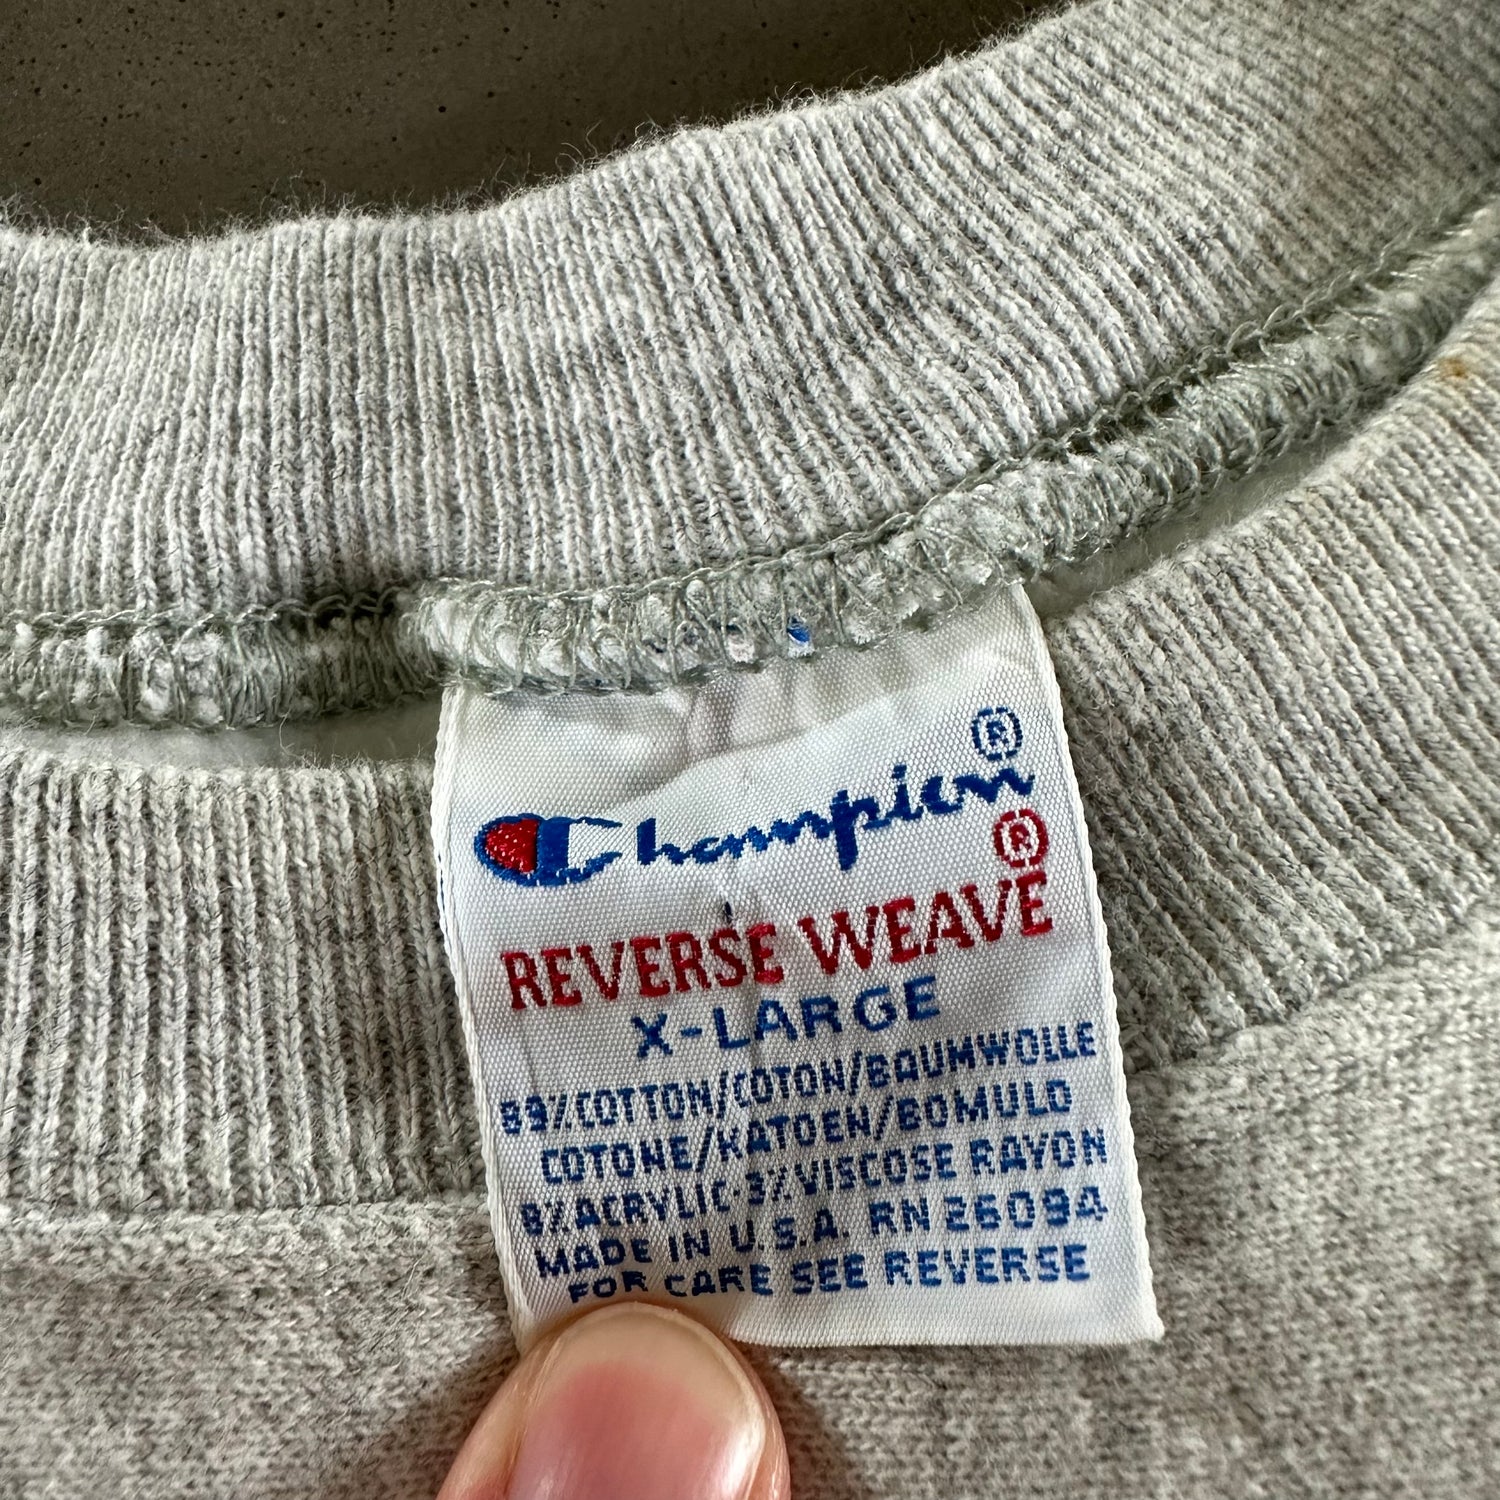 Vintage 1990s Notre Dame University Reverse Weave Sweatshirt size XL